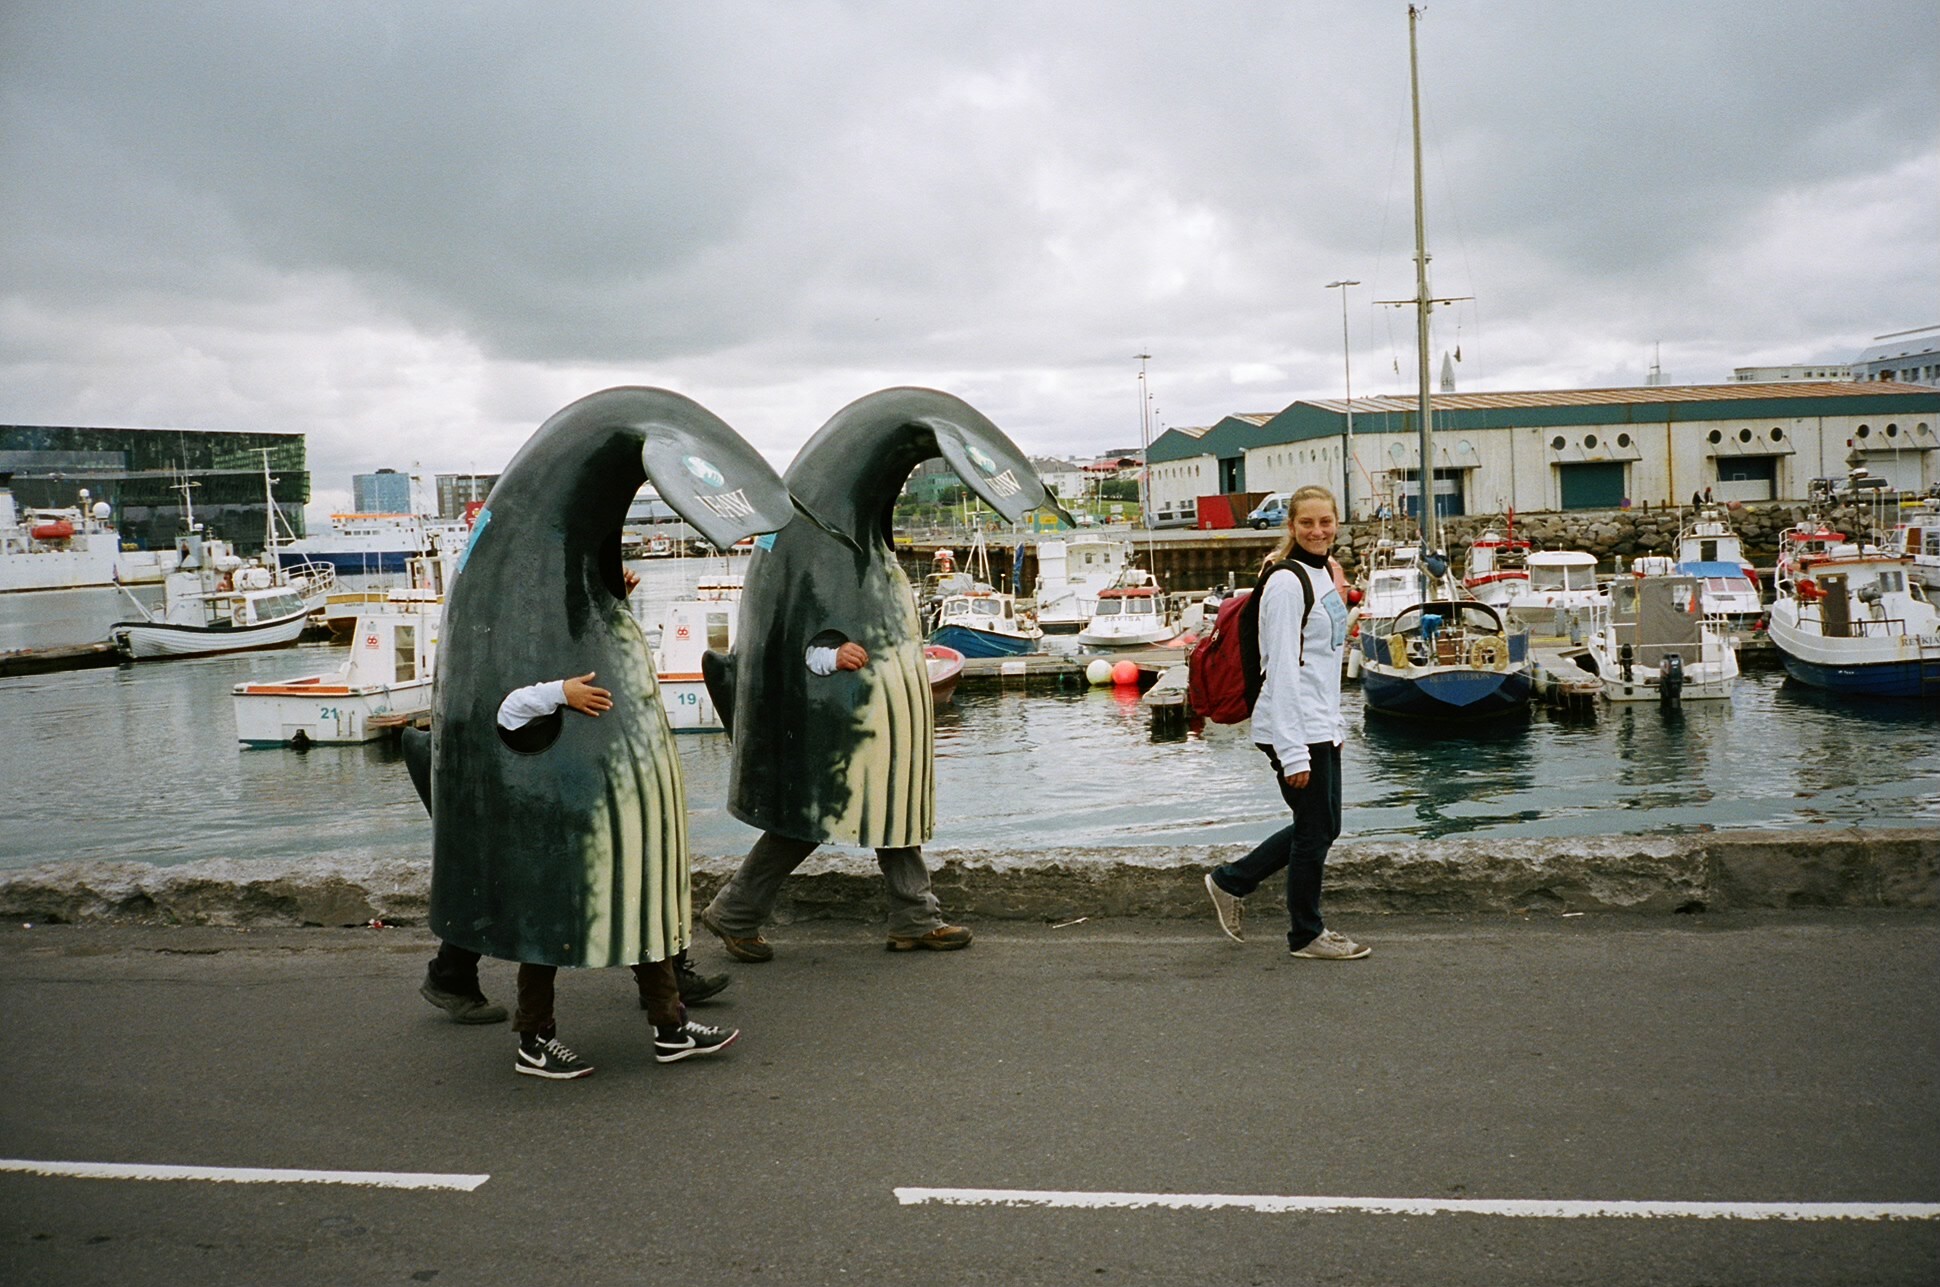 Гигантские китовые хвосты, следующие за девушкой. Фотограф Стивен Лесли